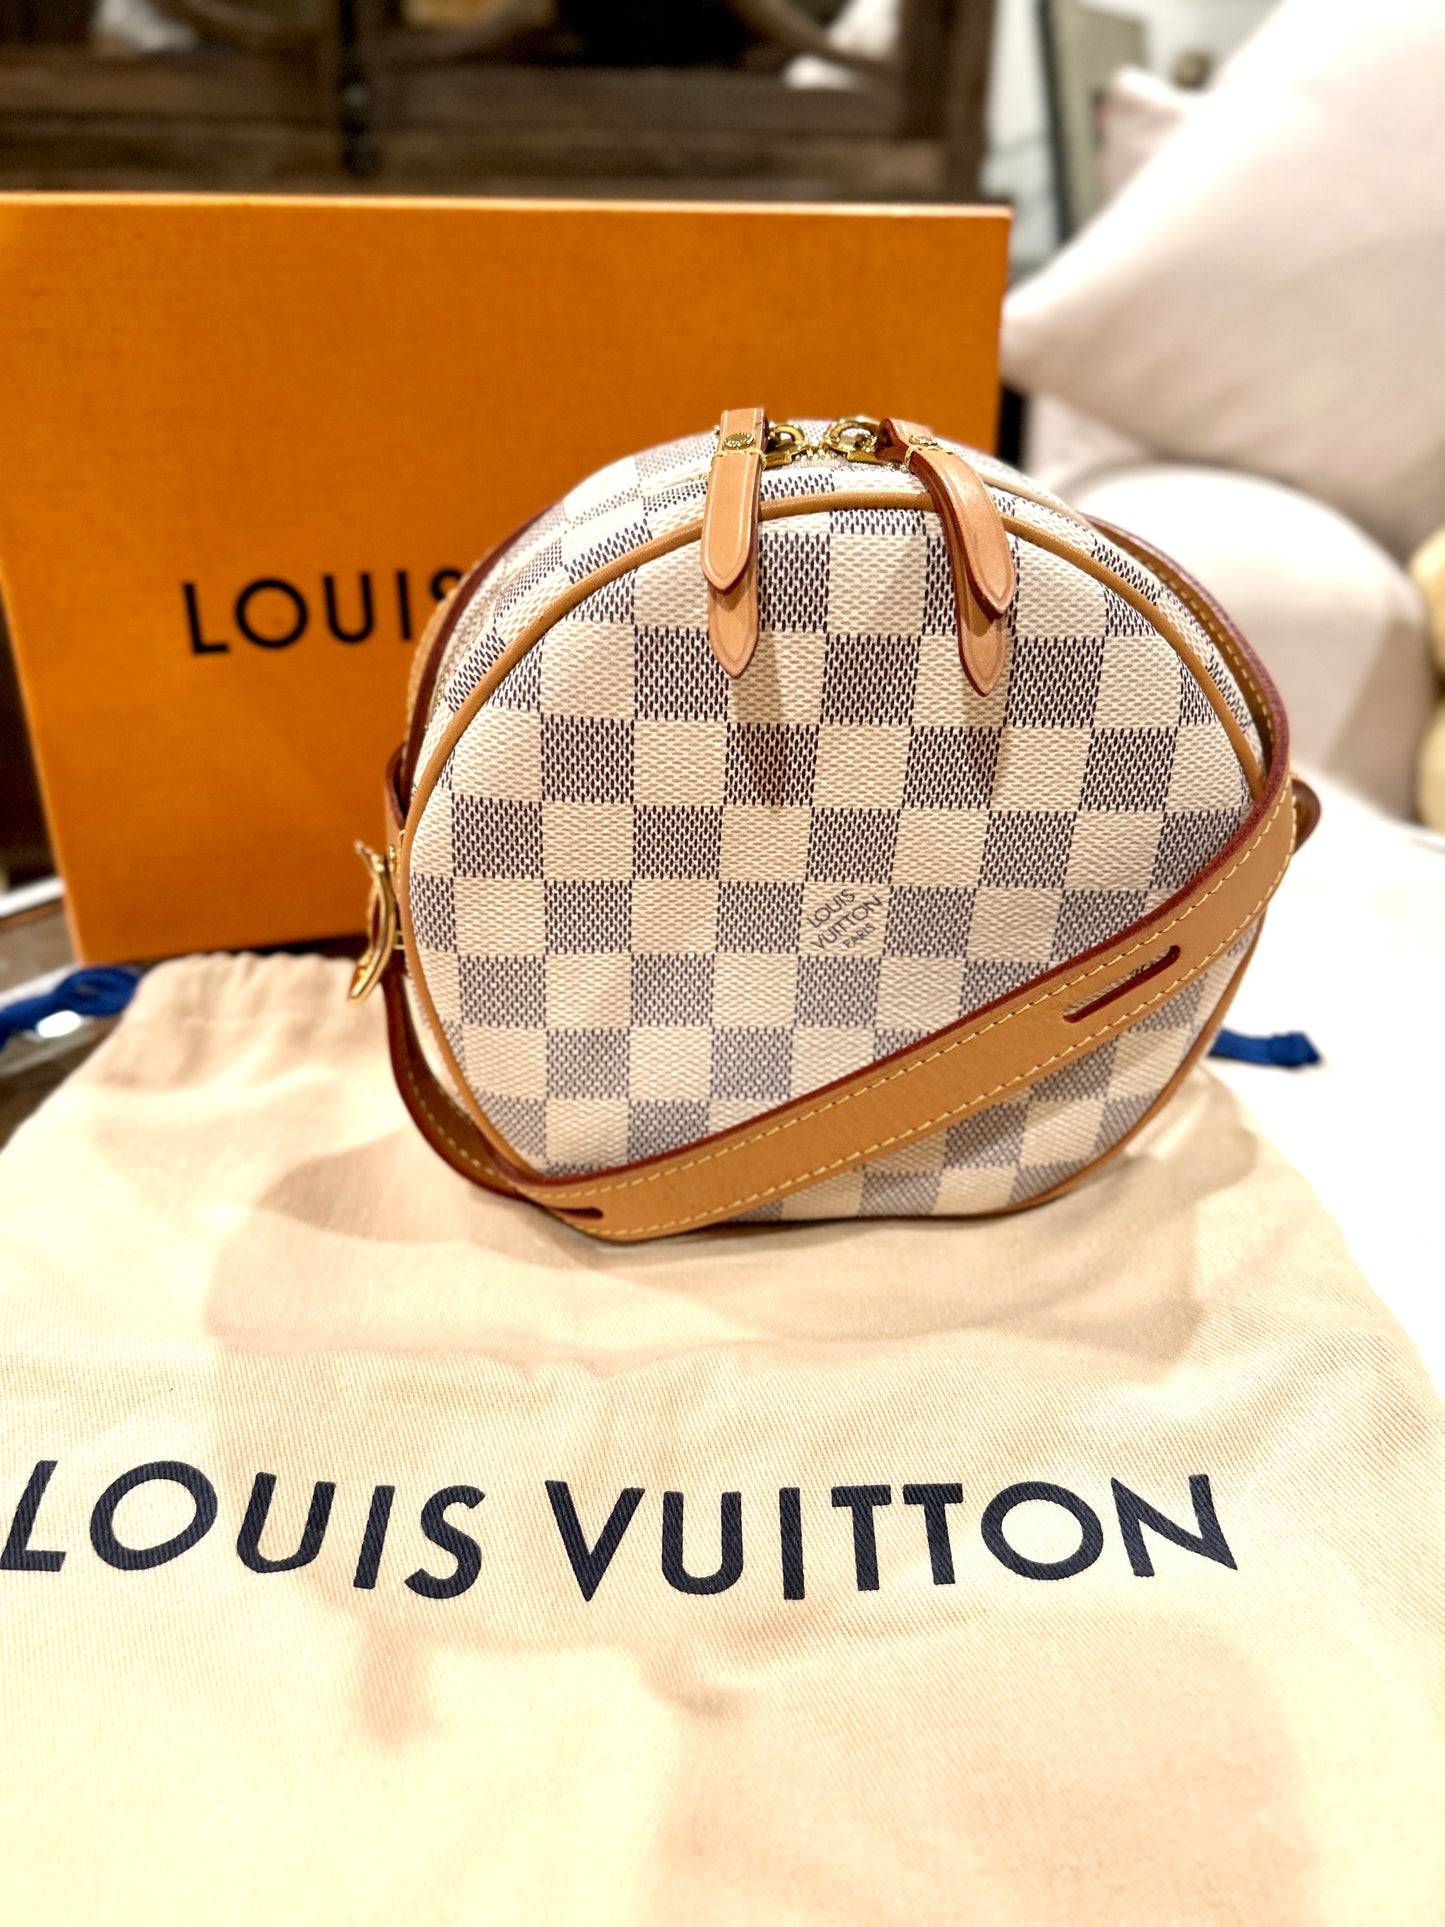 Authentic VS Fake Louis Vuitton Boite Chapeau Souple 